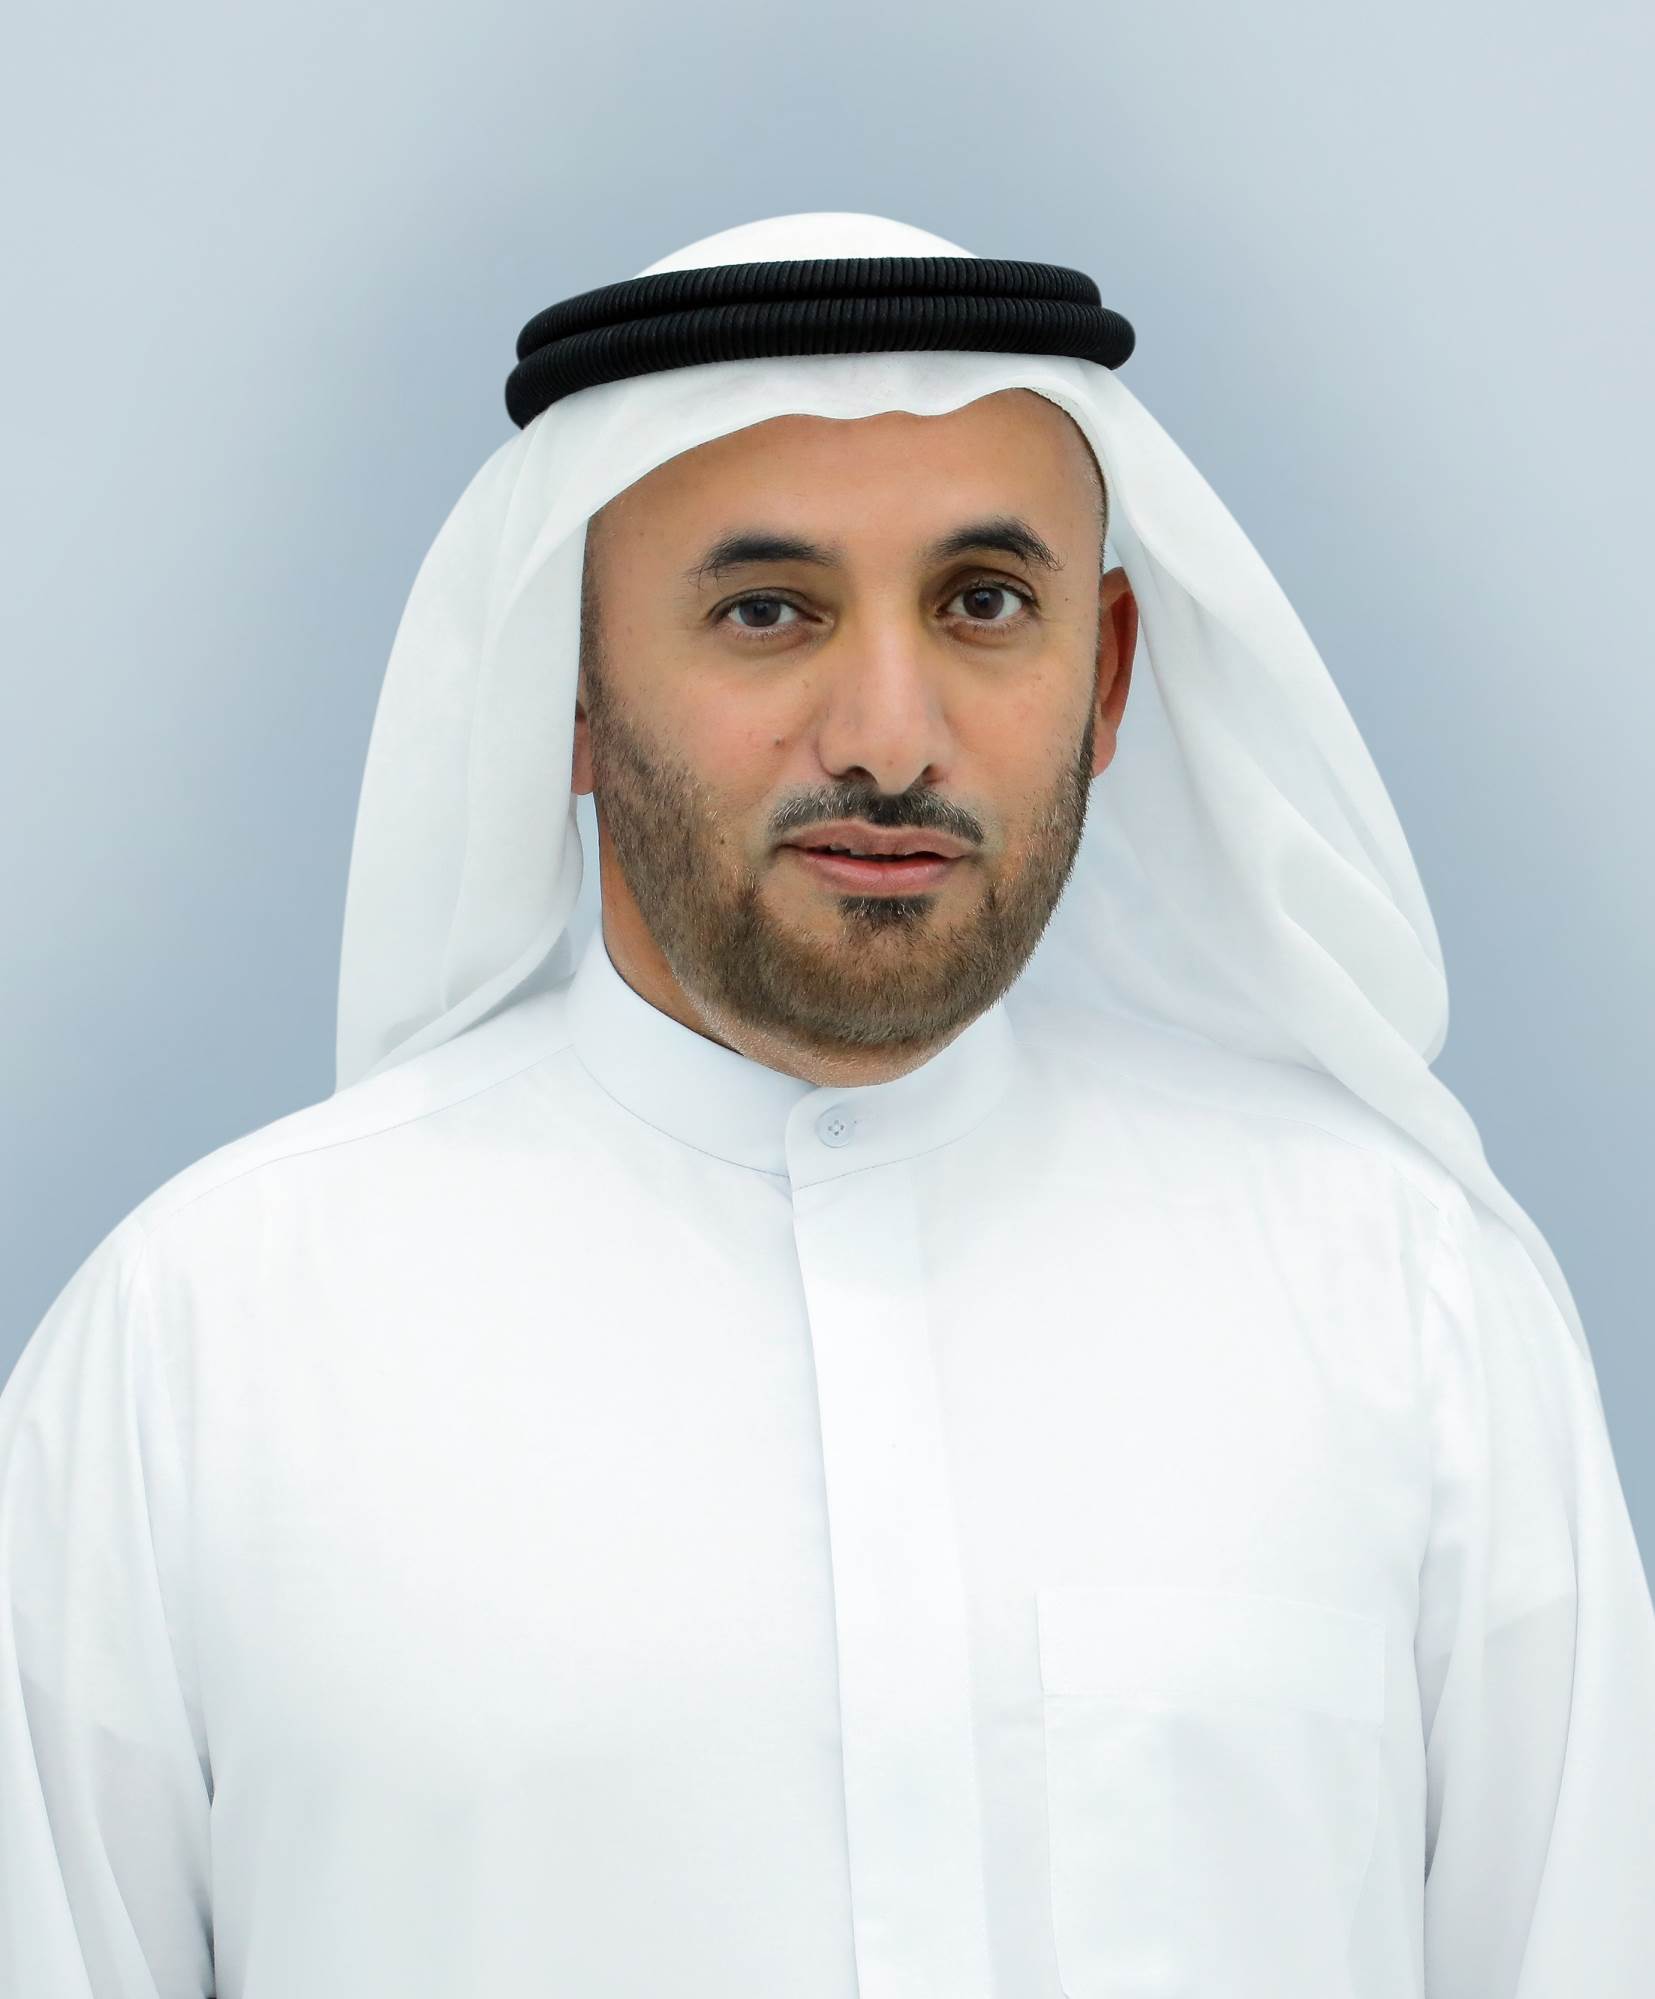 سعادة سلطان بطي بن مجرن، مدير عام دائرة الأراضي والأملاك في دبي